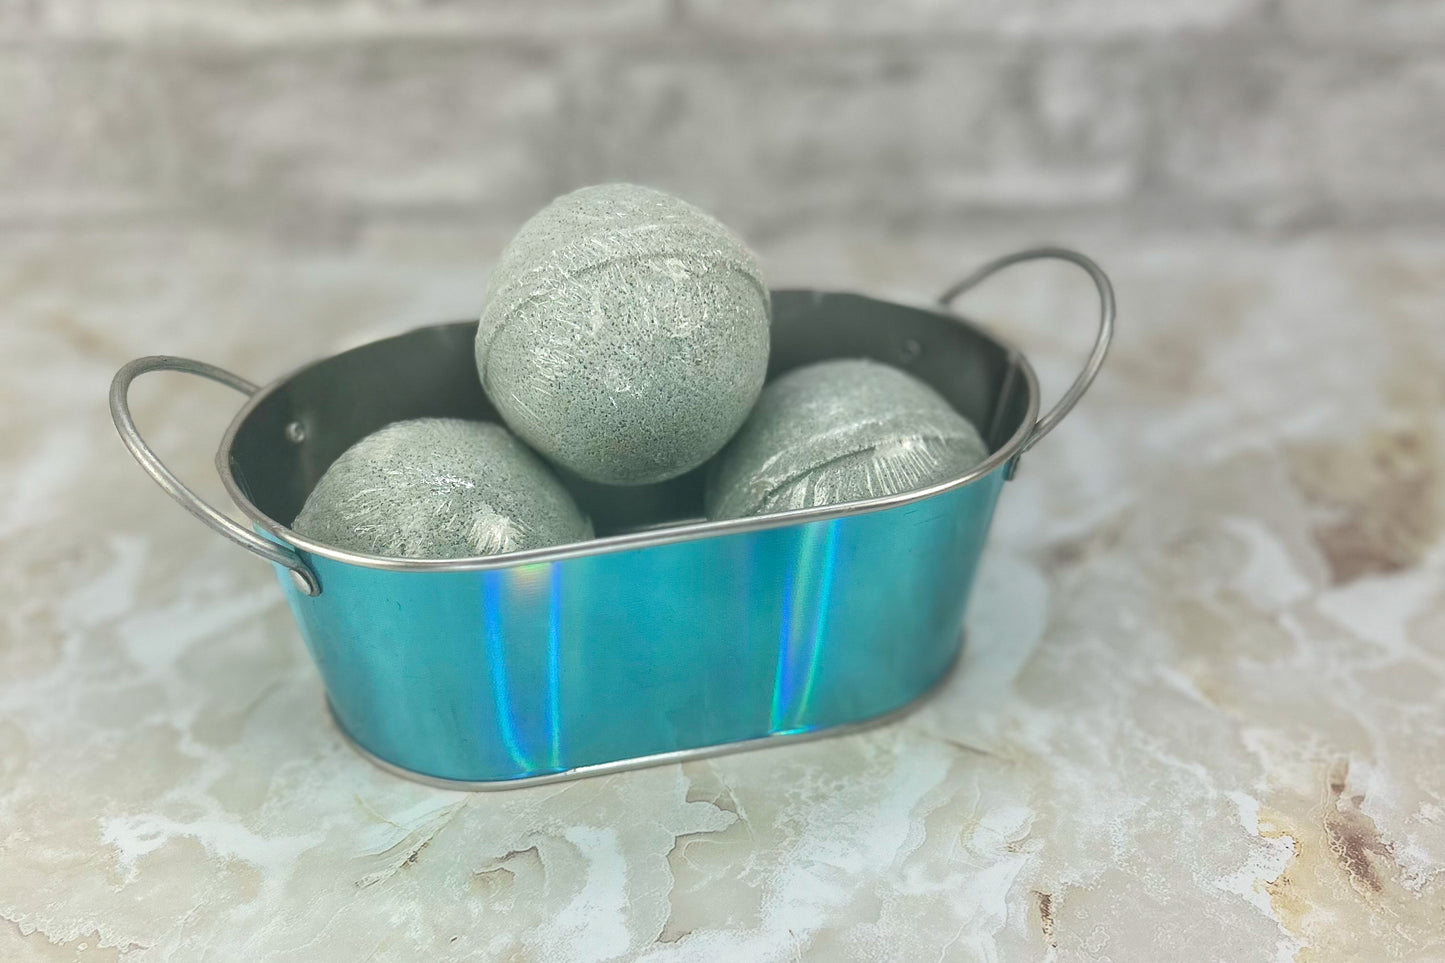 Eucalyptus Mint Bath Bomb